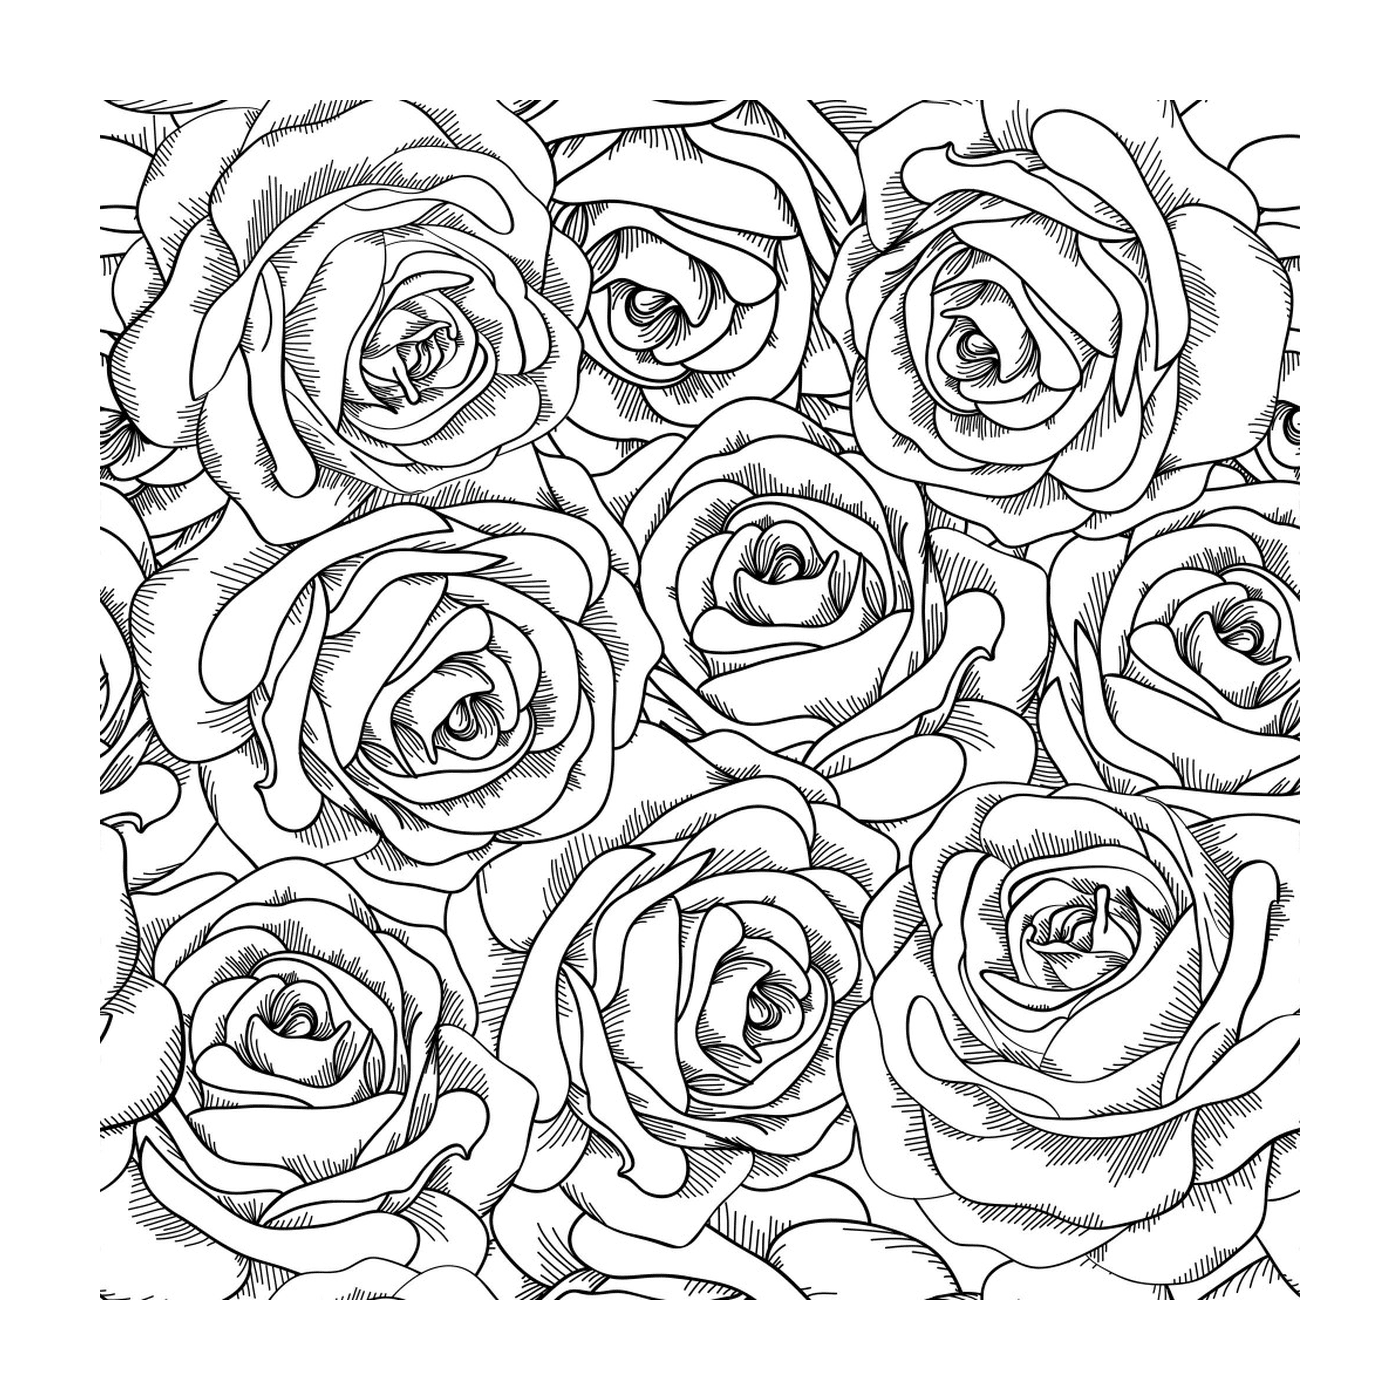  Rosen mit vielen Blütenblättern 